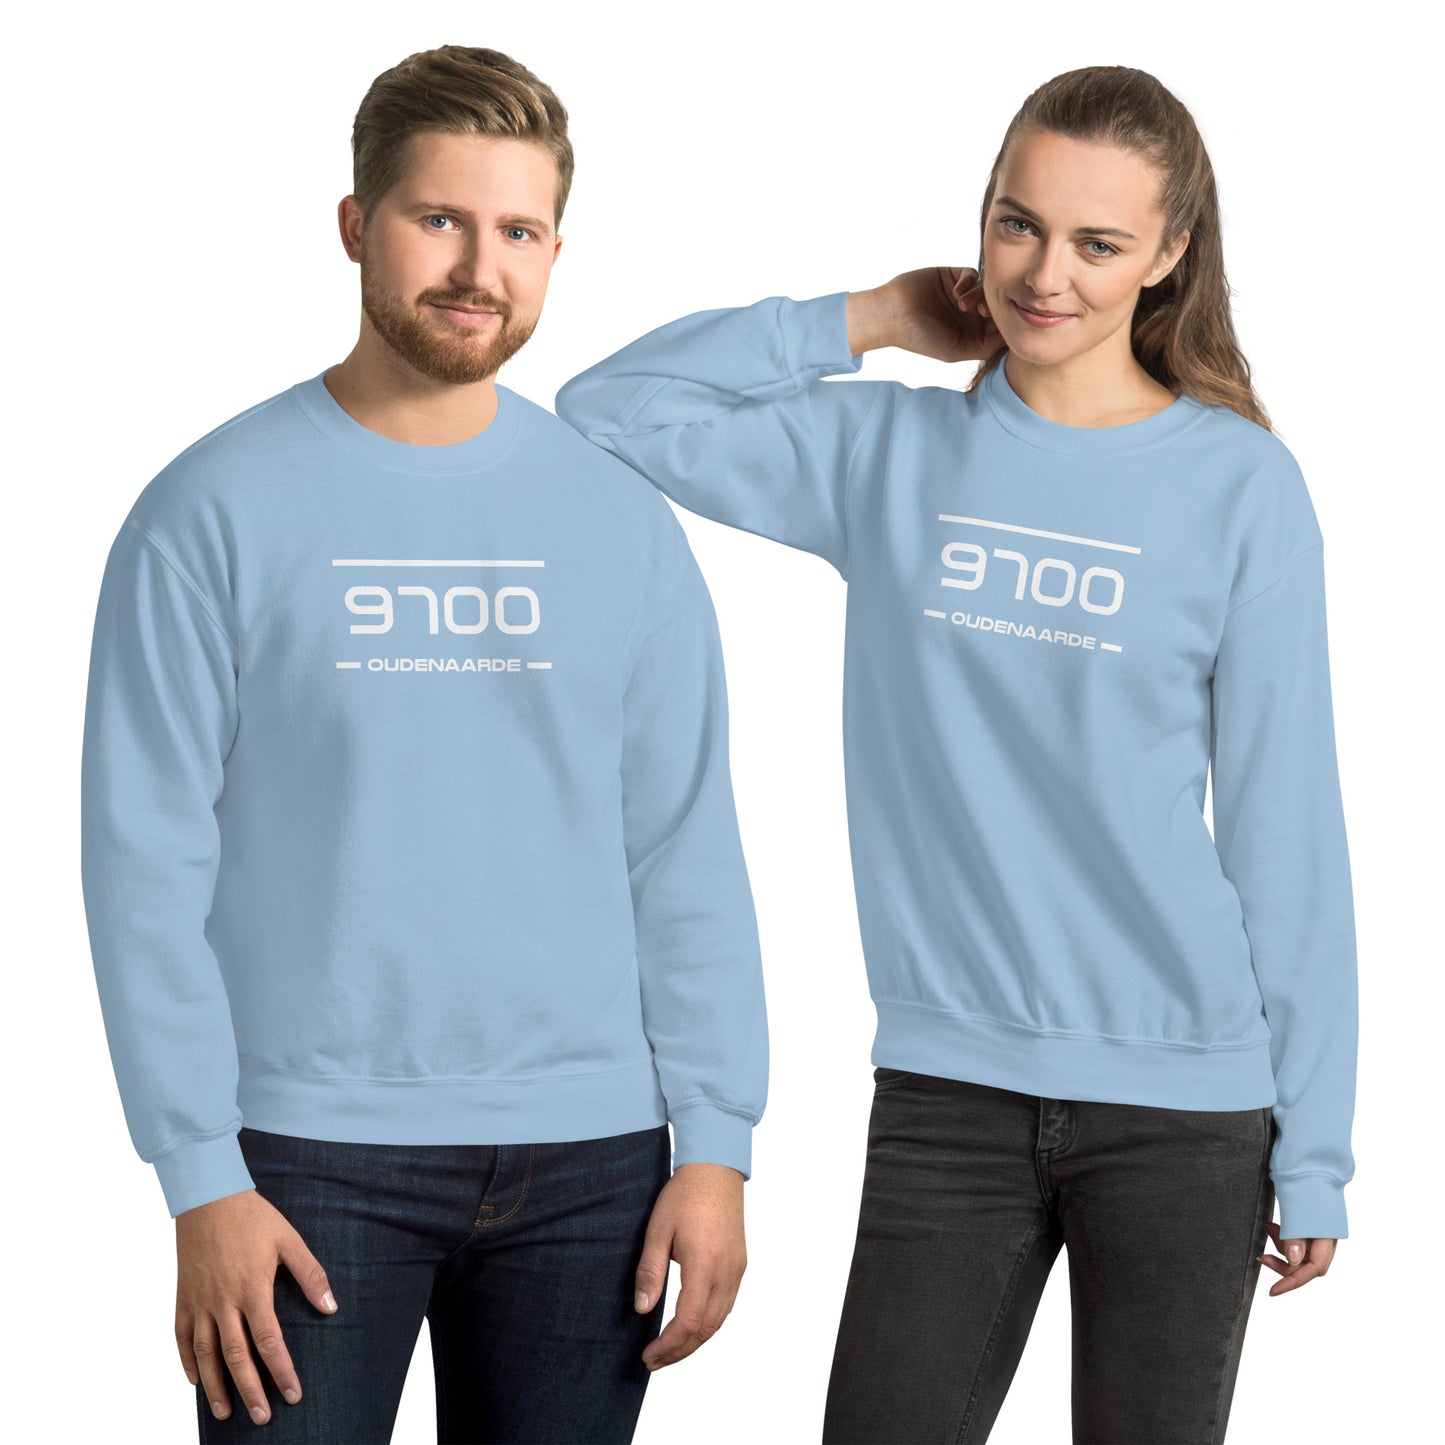 Sweater - 9700 - Oudenaarde (M/V)